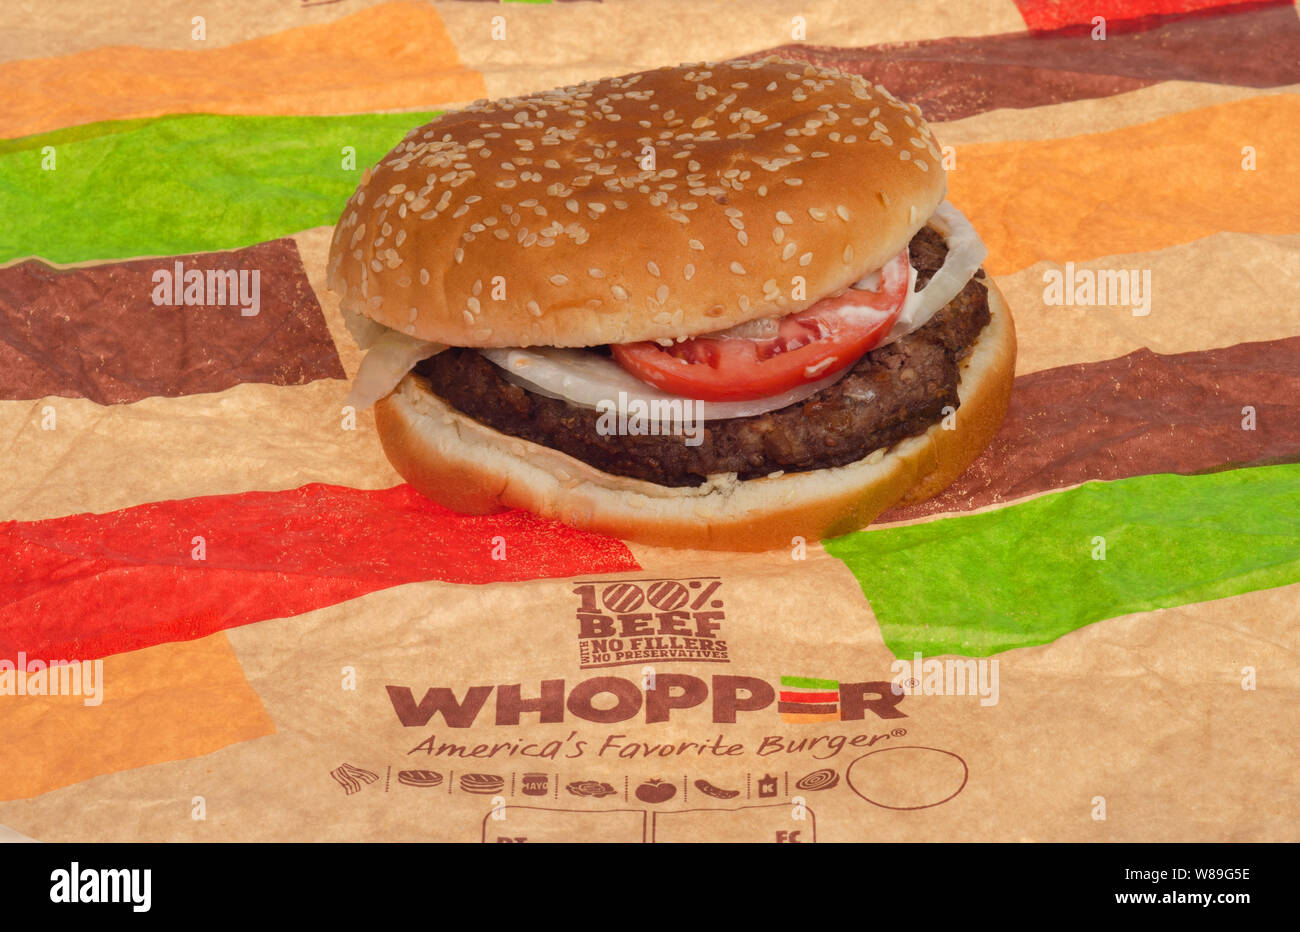 Burger King Whopper de boeuf sur l'emballage Banque D'Images